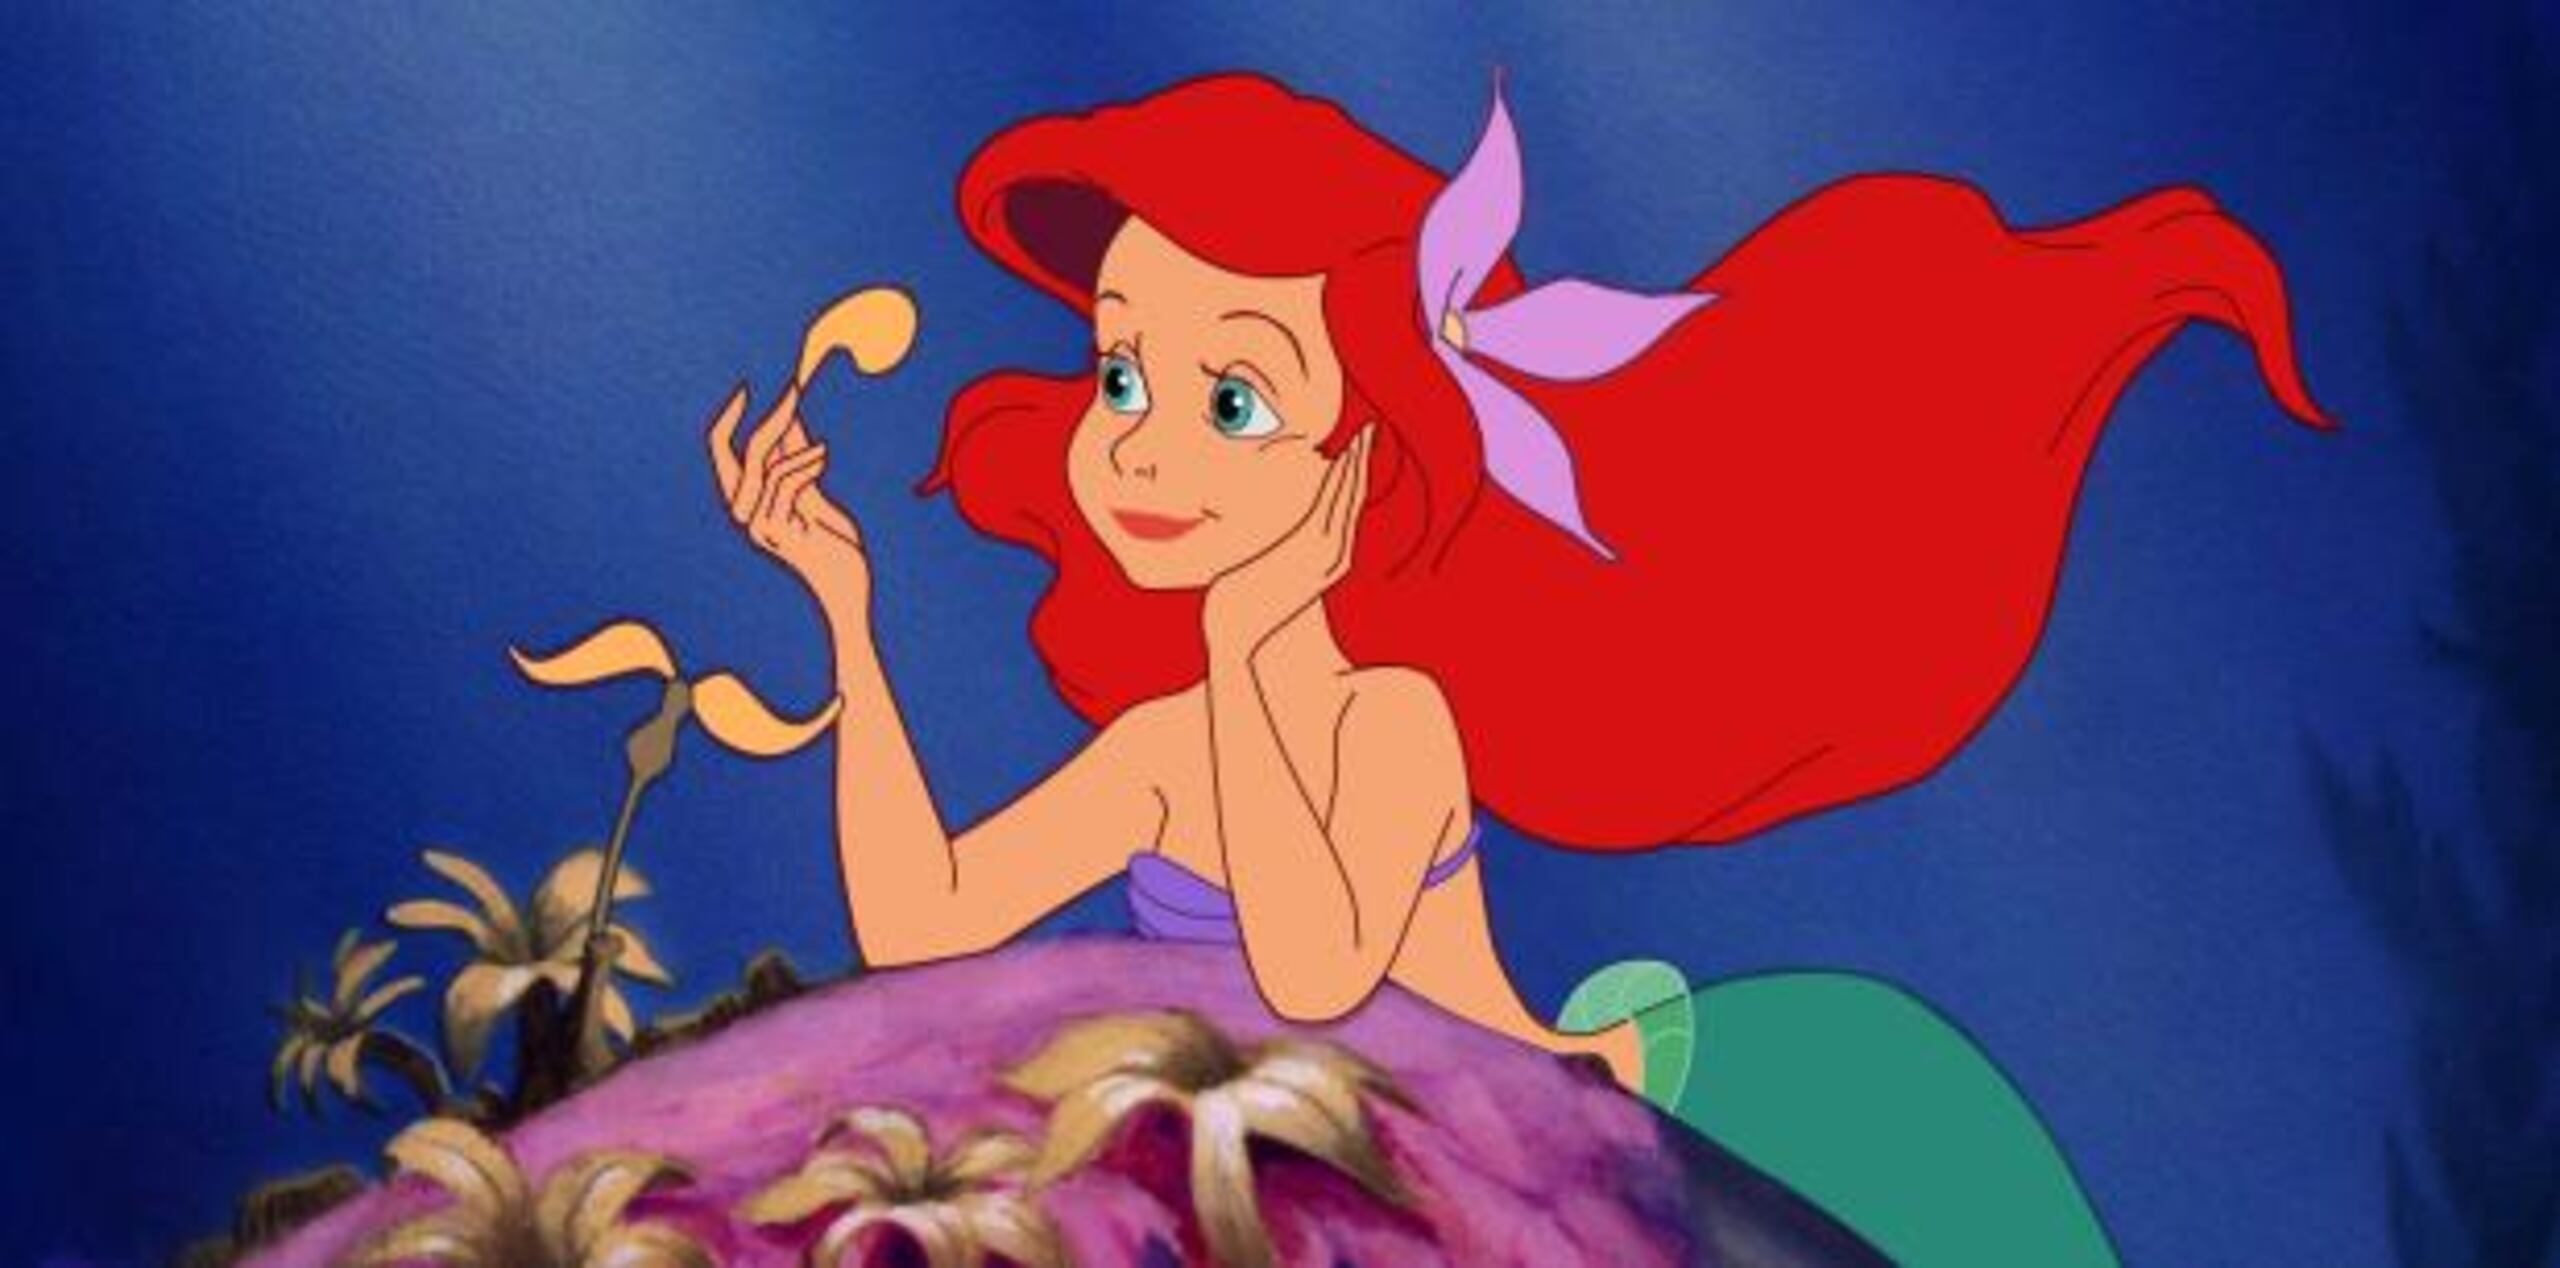 En los últimos 30 años, Ariel se ha convertido en el puente entre princesas clásicas como la Cinderella y la Sleeping Beauty y modernas como Mulan y Merida. (Disney vía AP)